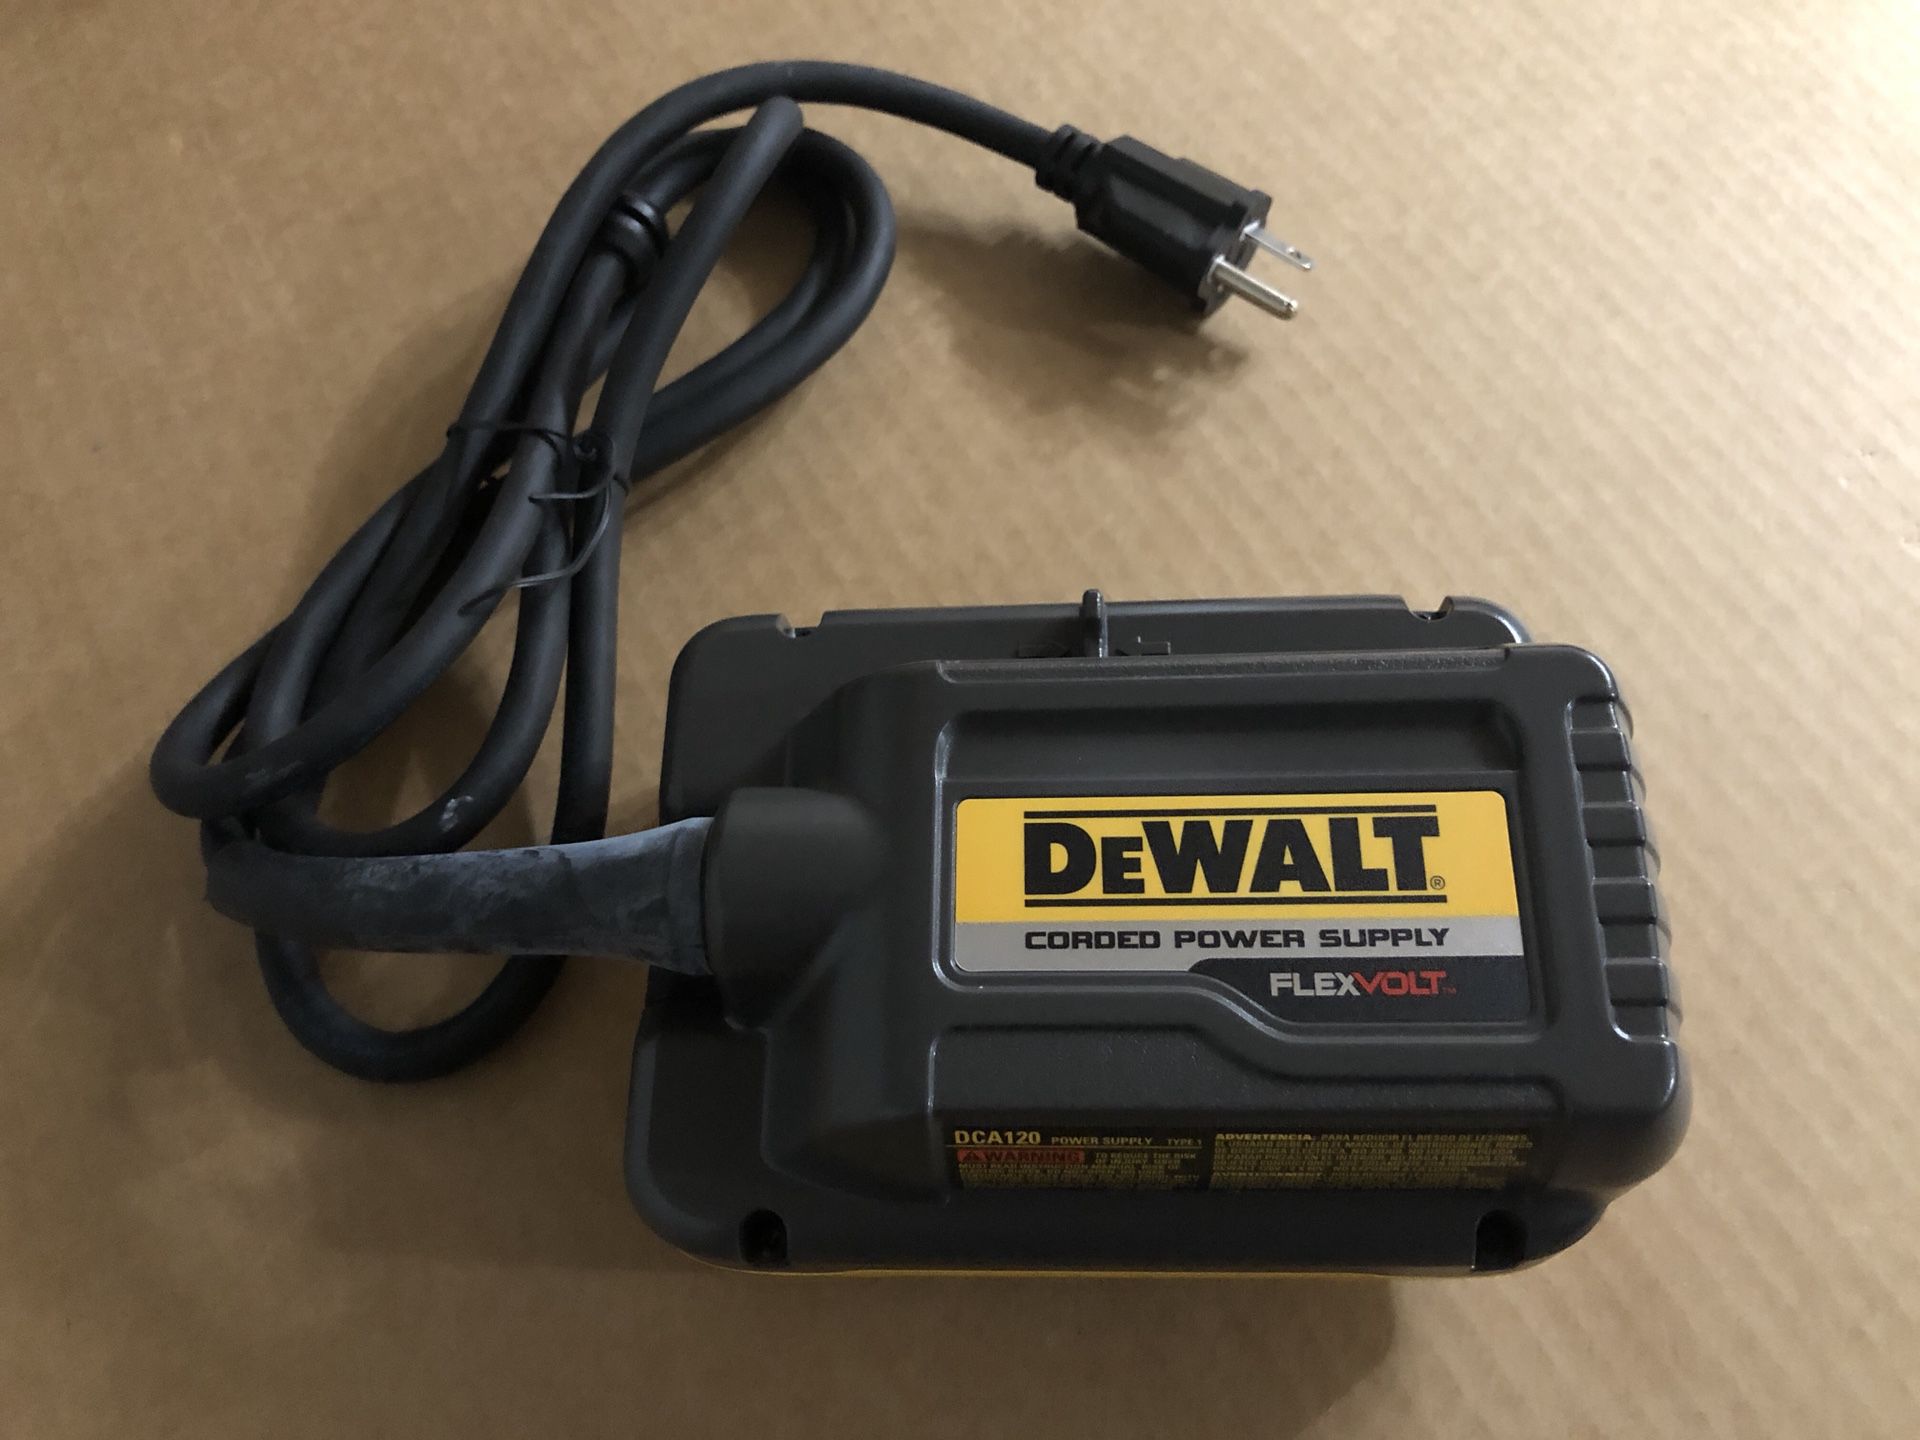 DEWALT DCA120 FLEXVOLT 120V Corded Power Supply Adaptor